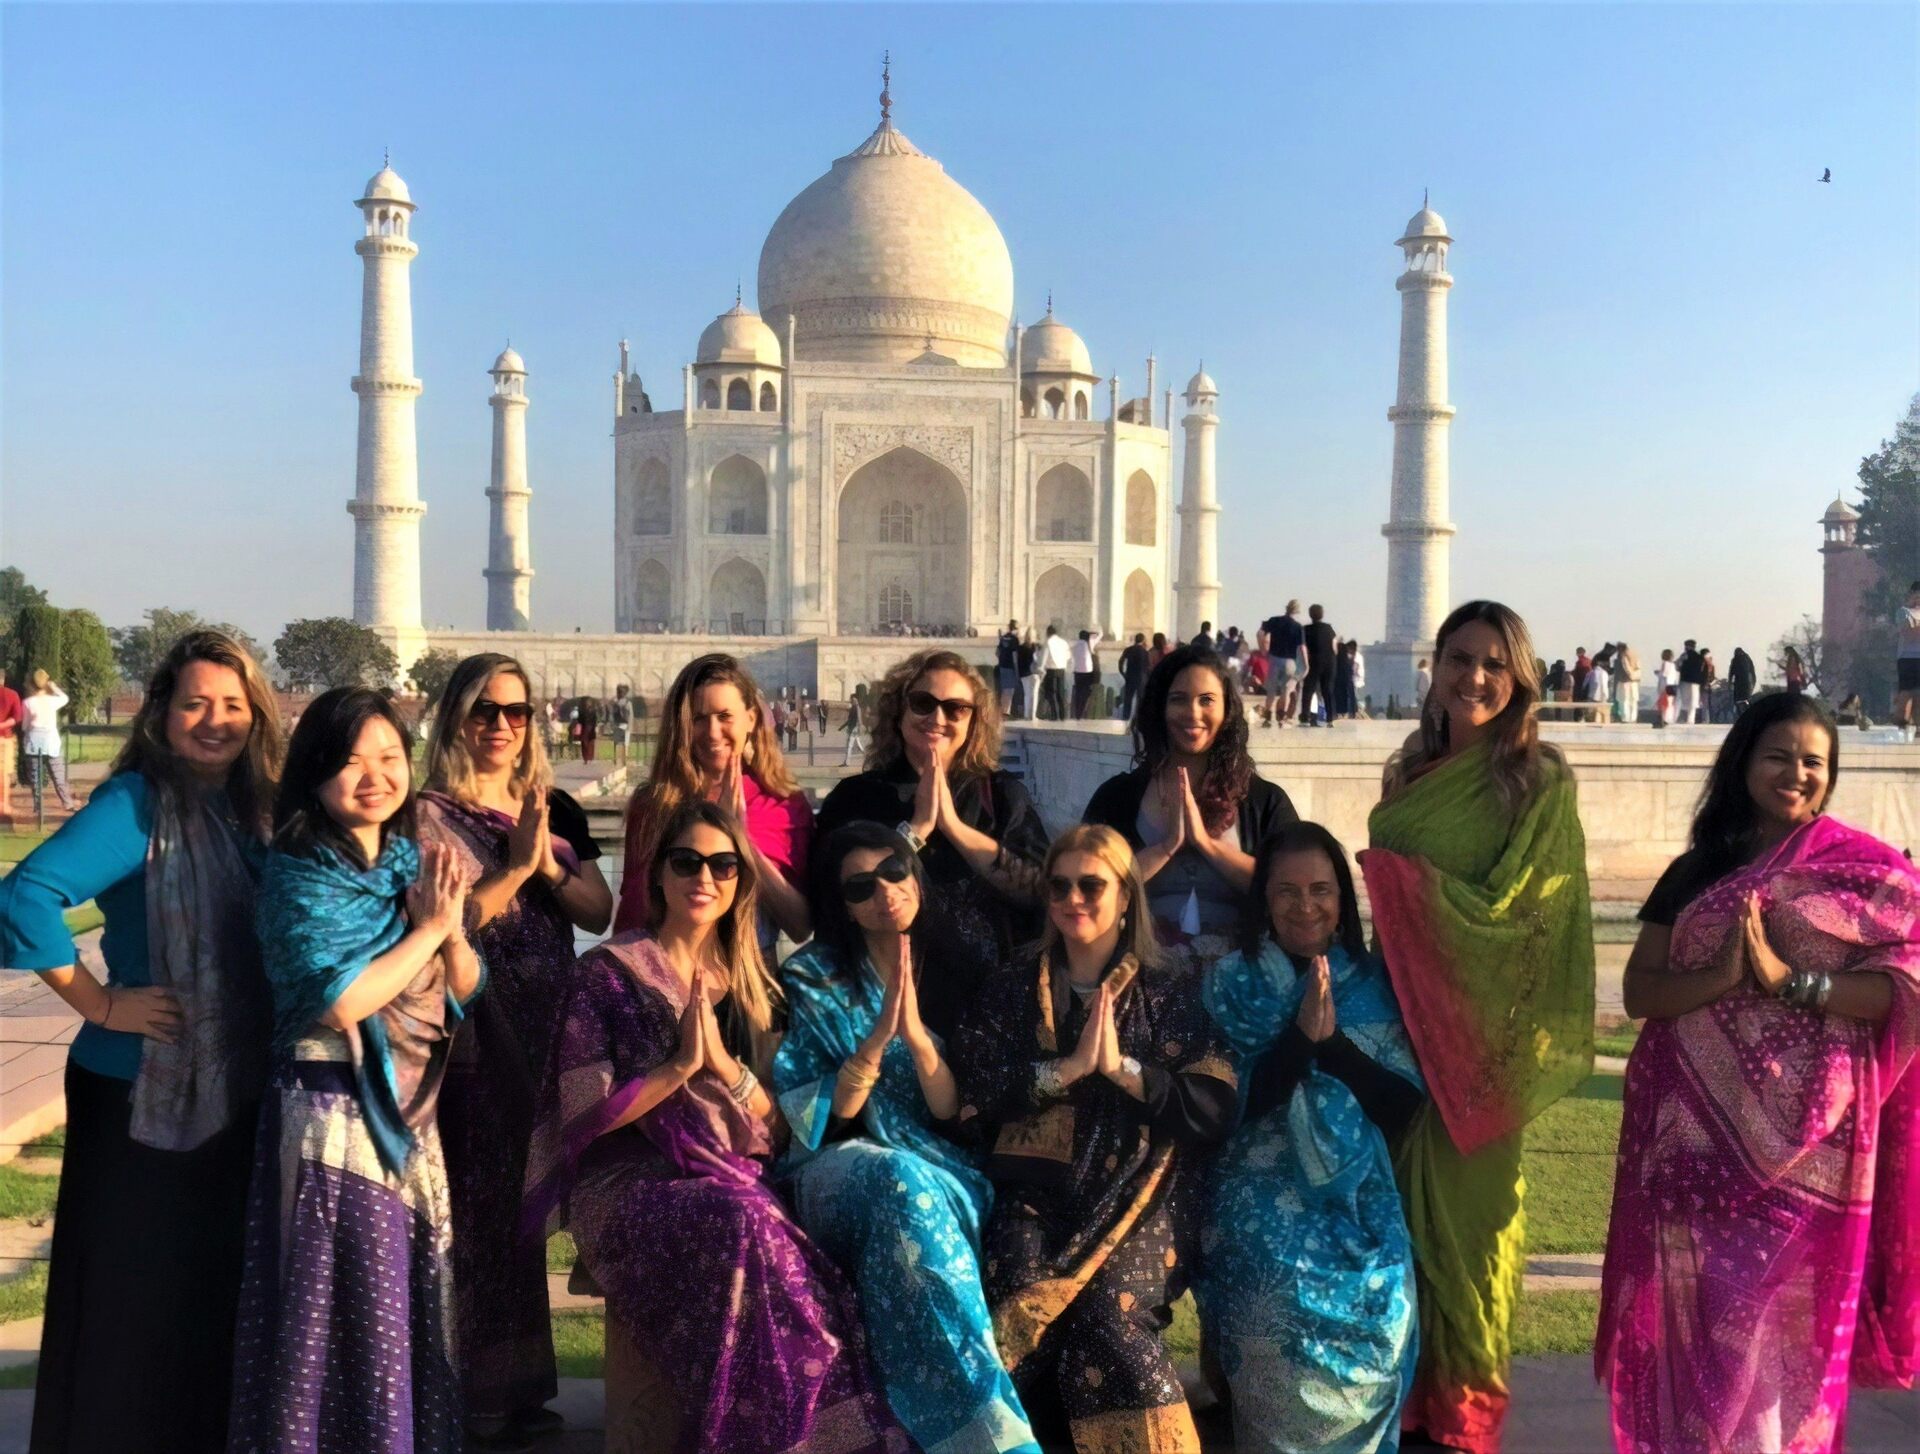 Brasileiras no Taj Mahal, viagem exclusiva de mulheres organizada por Gilsimara Caresia, da GirlsGo